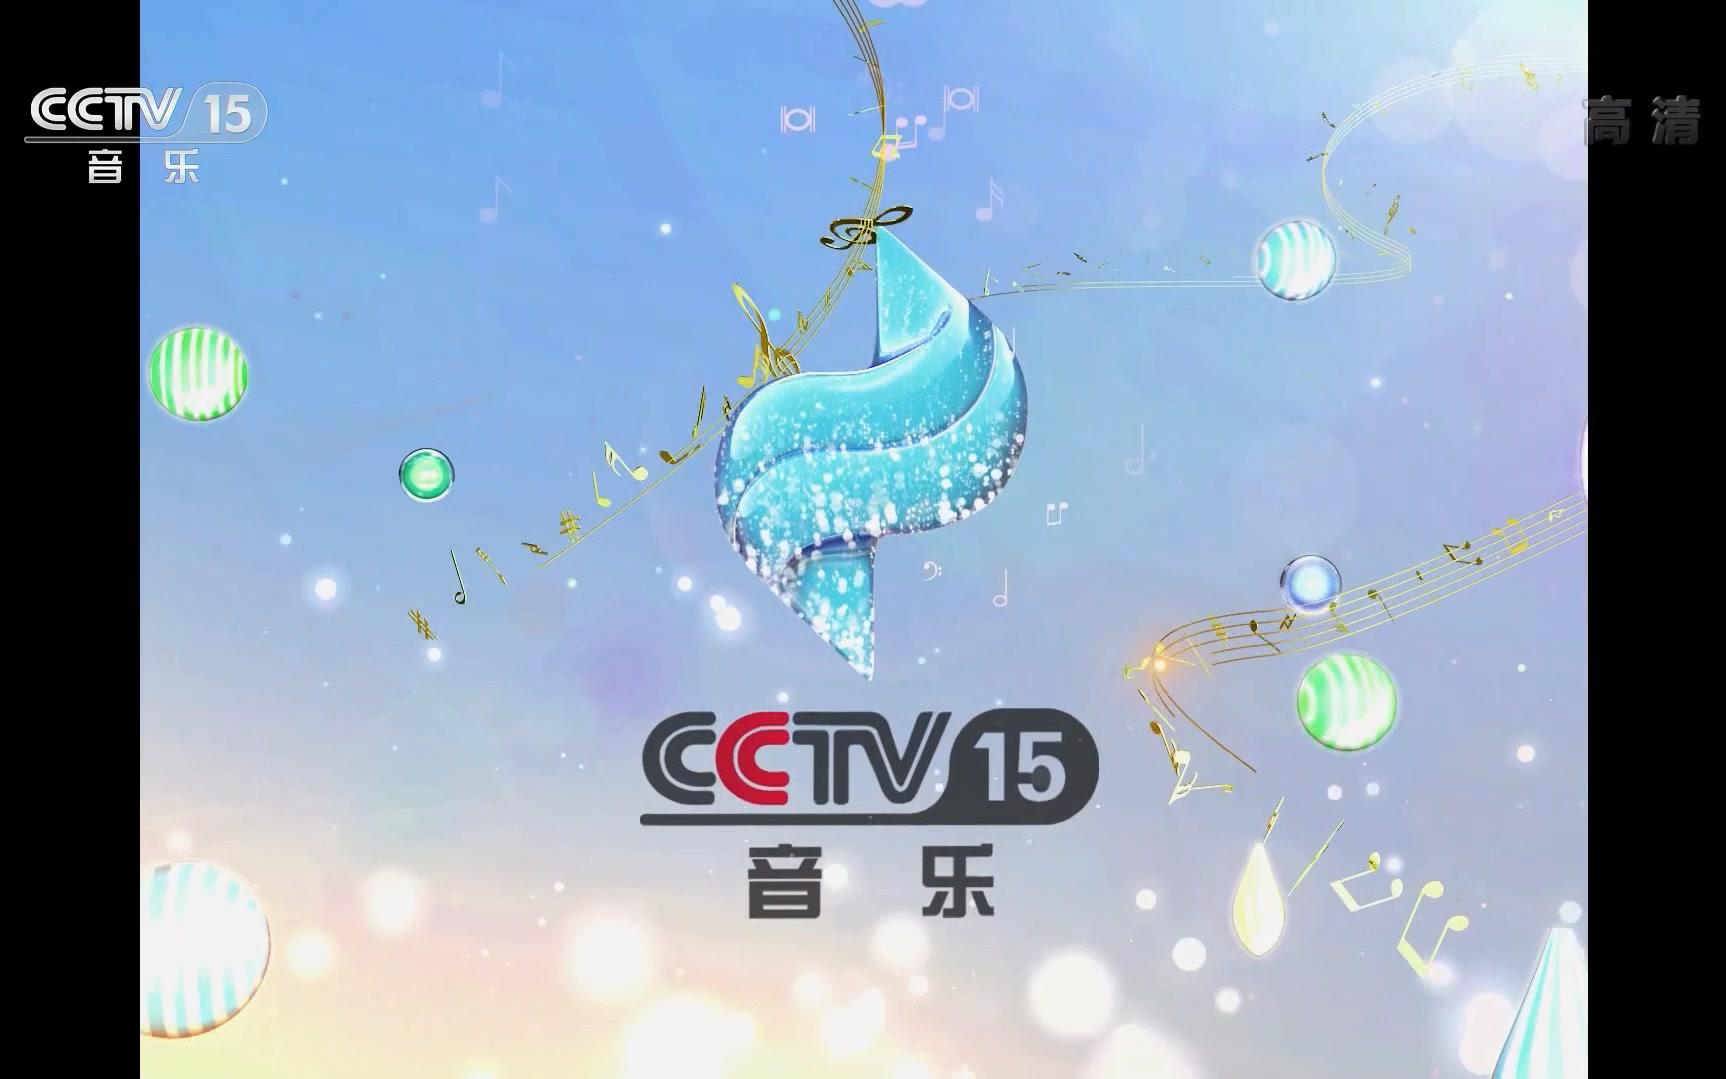 cctv15hd频道logo新包装宣传片